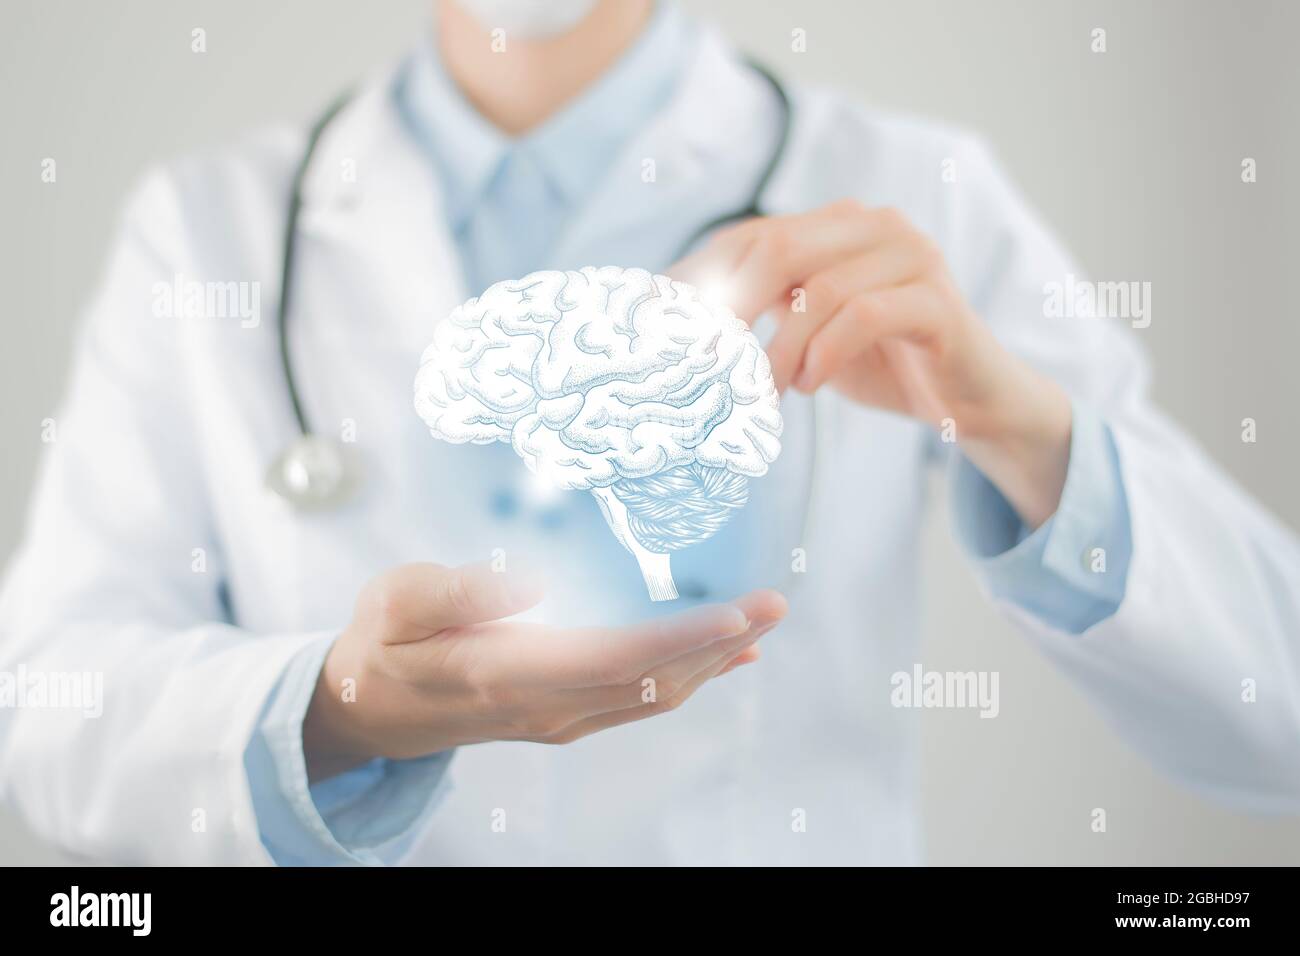 Weibliche Ärztin hält virtuelle volumetrische Zeichnung des Gehirns in der Hand. Handgezeichnetes menschliches Organ, Kopierraum auf der rechten Seite, RAW-Fotofarben. Hospi im Gesundheitswesen Stockfoto